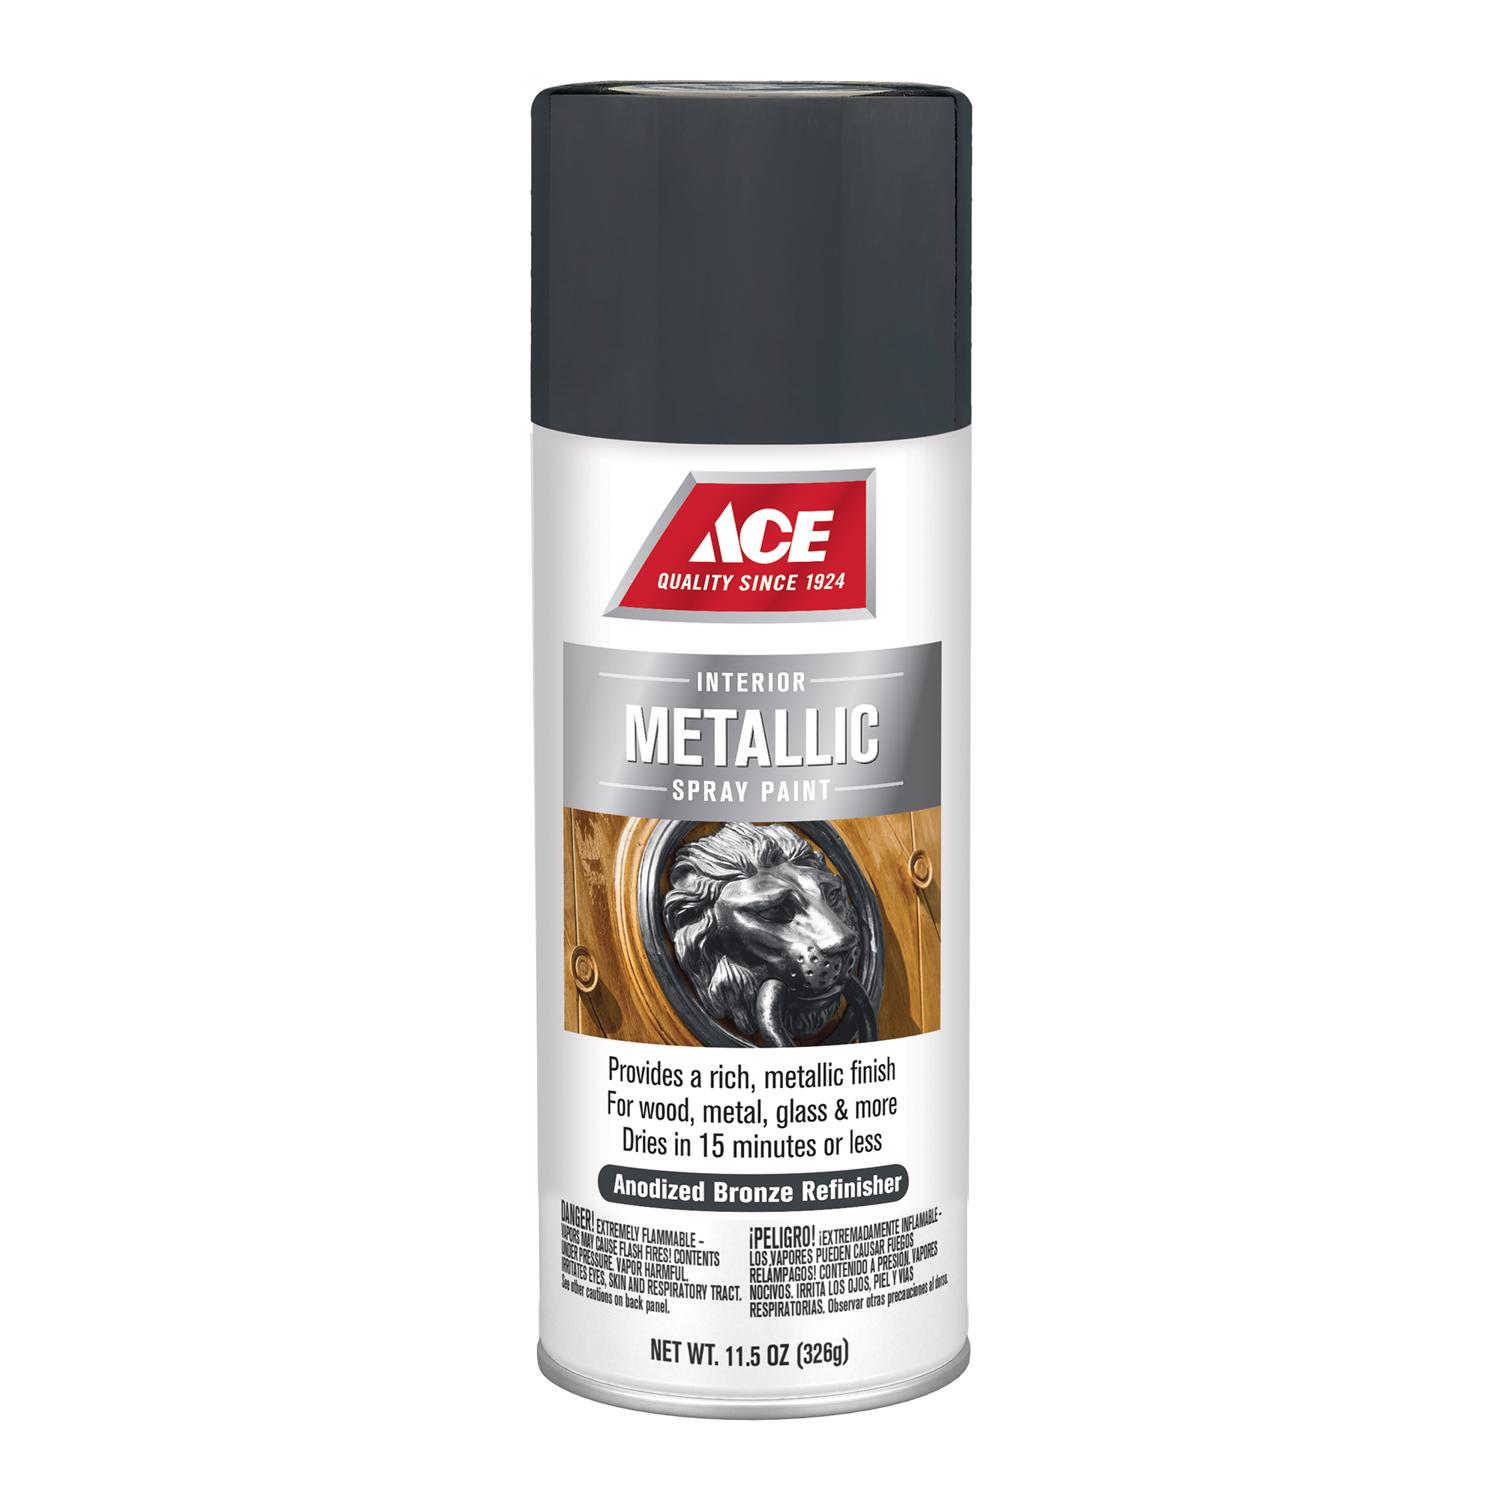 Ace Metallic Anodized Bronze Refinisher Spray Paint 11.5 oz